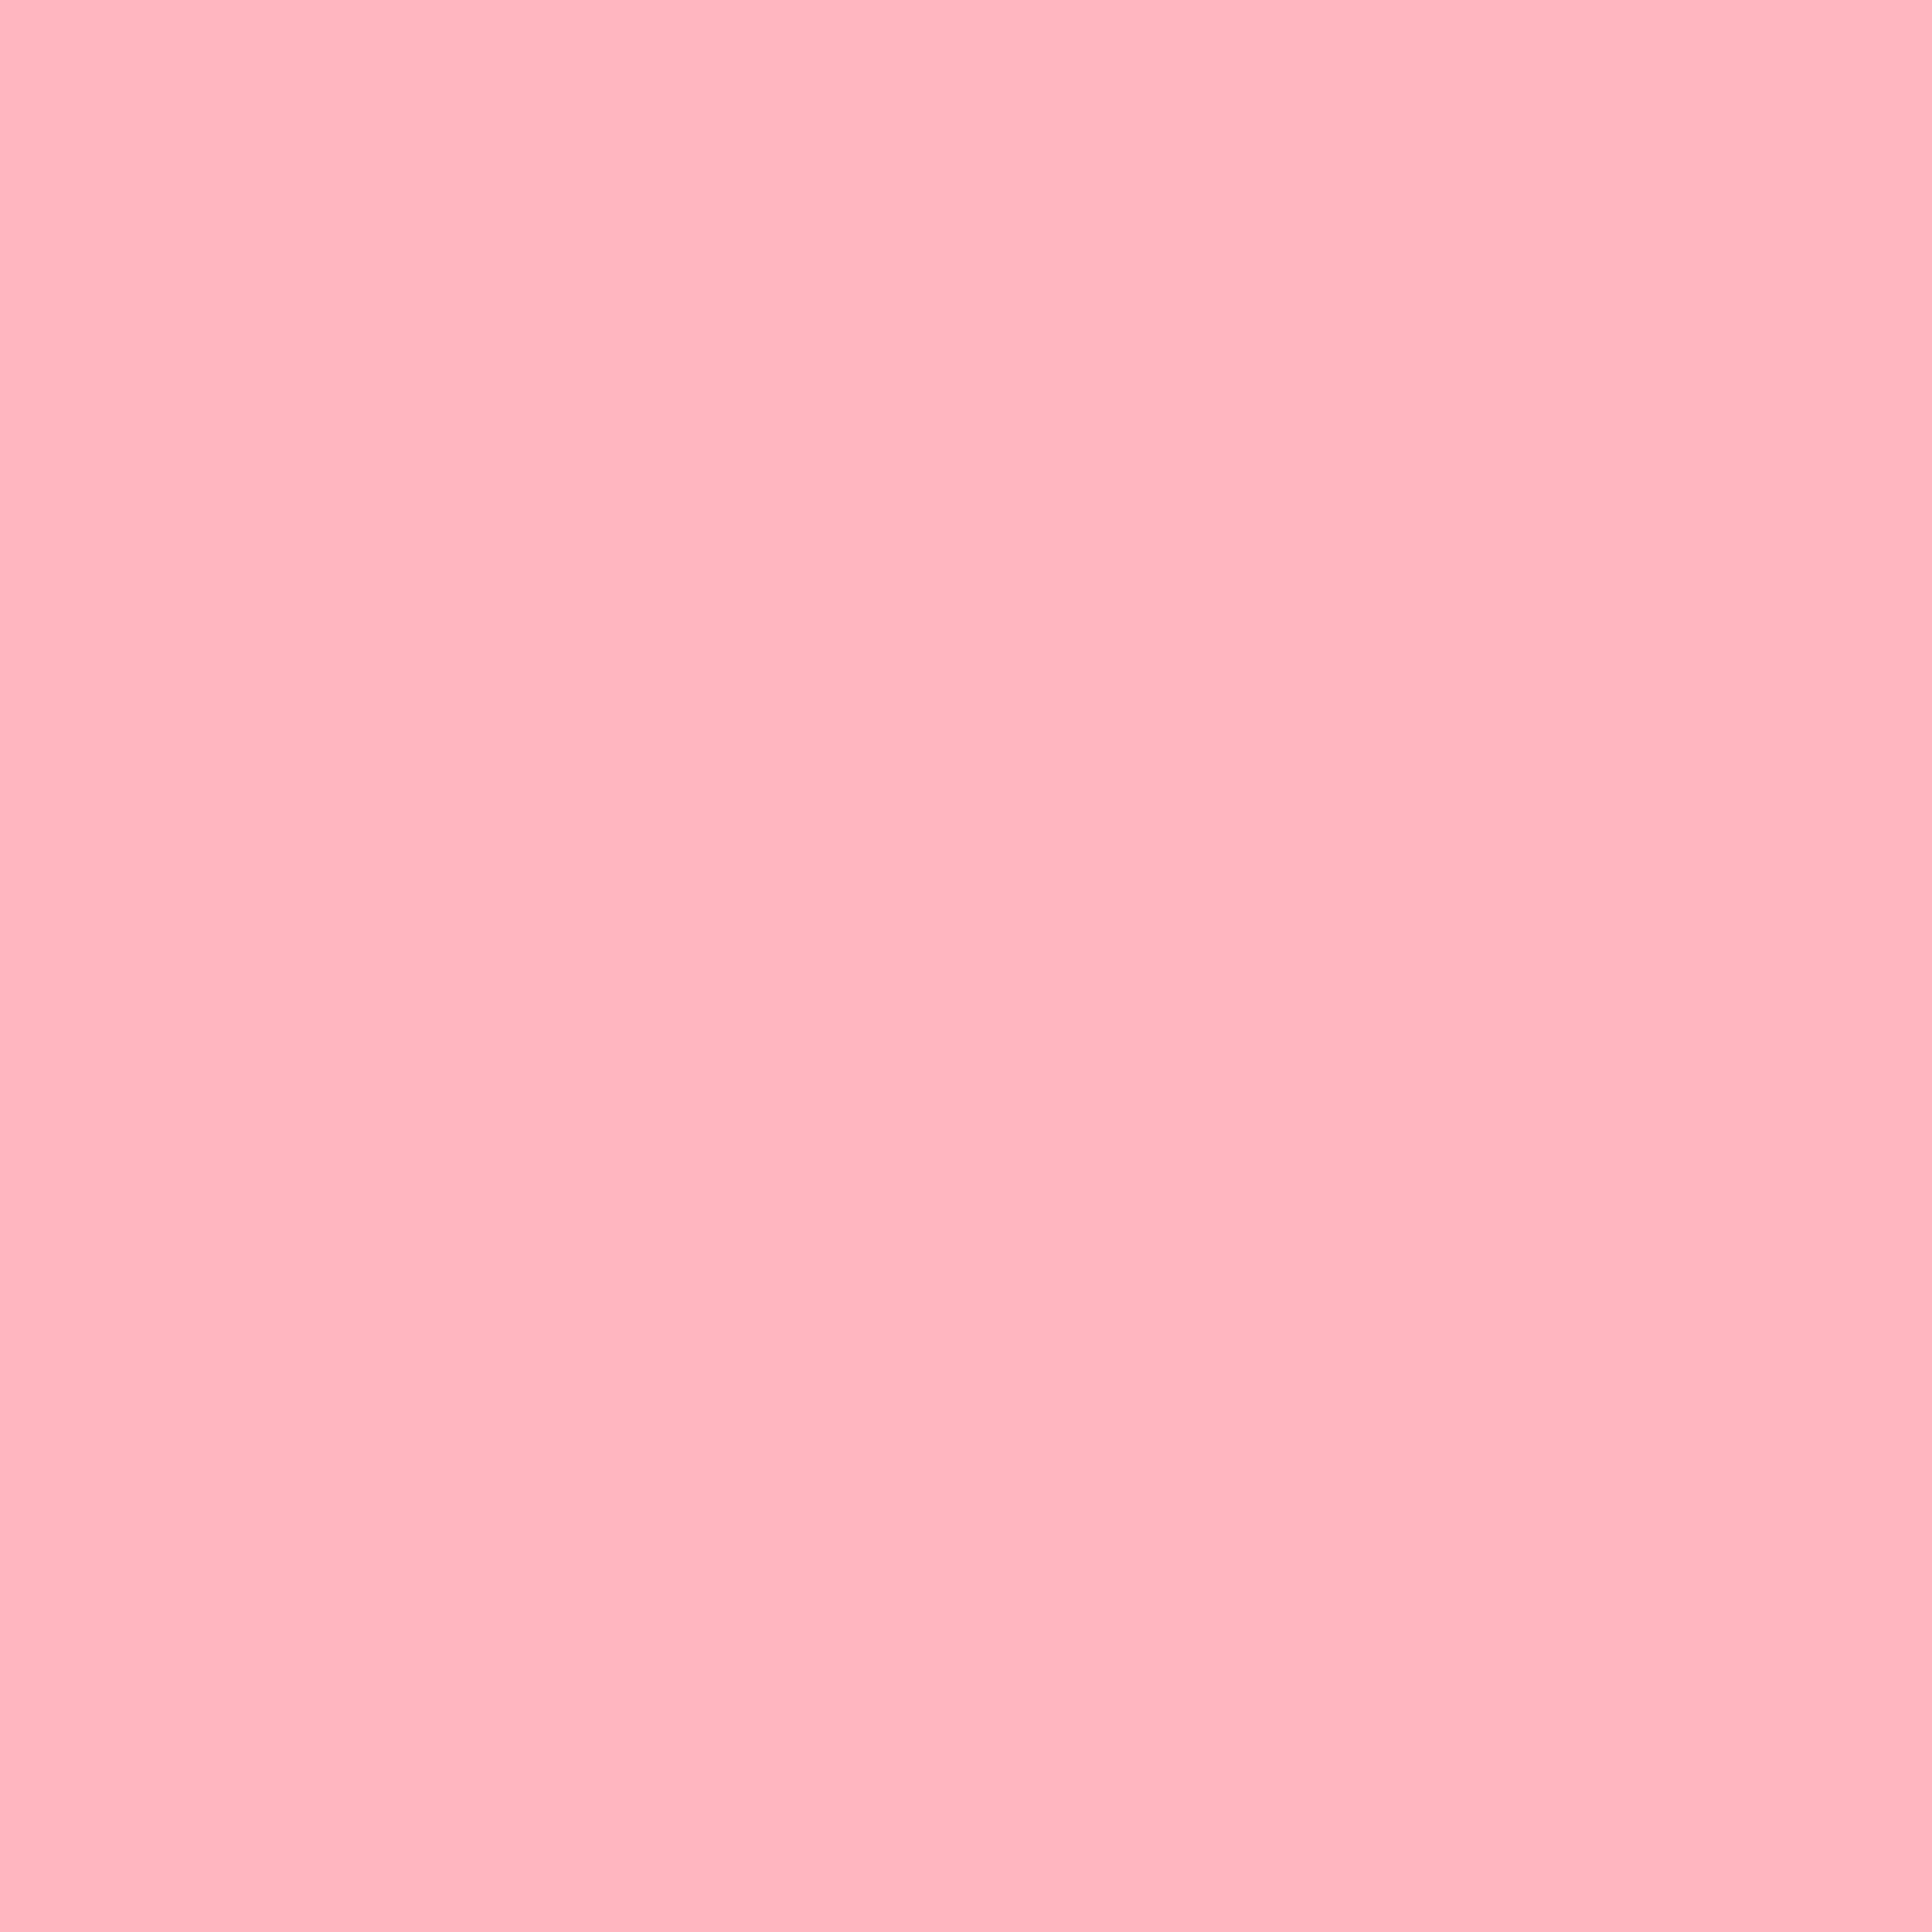 Solid Soft Pink Background Light Color